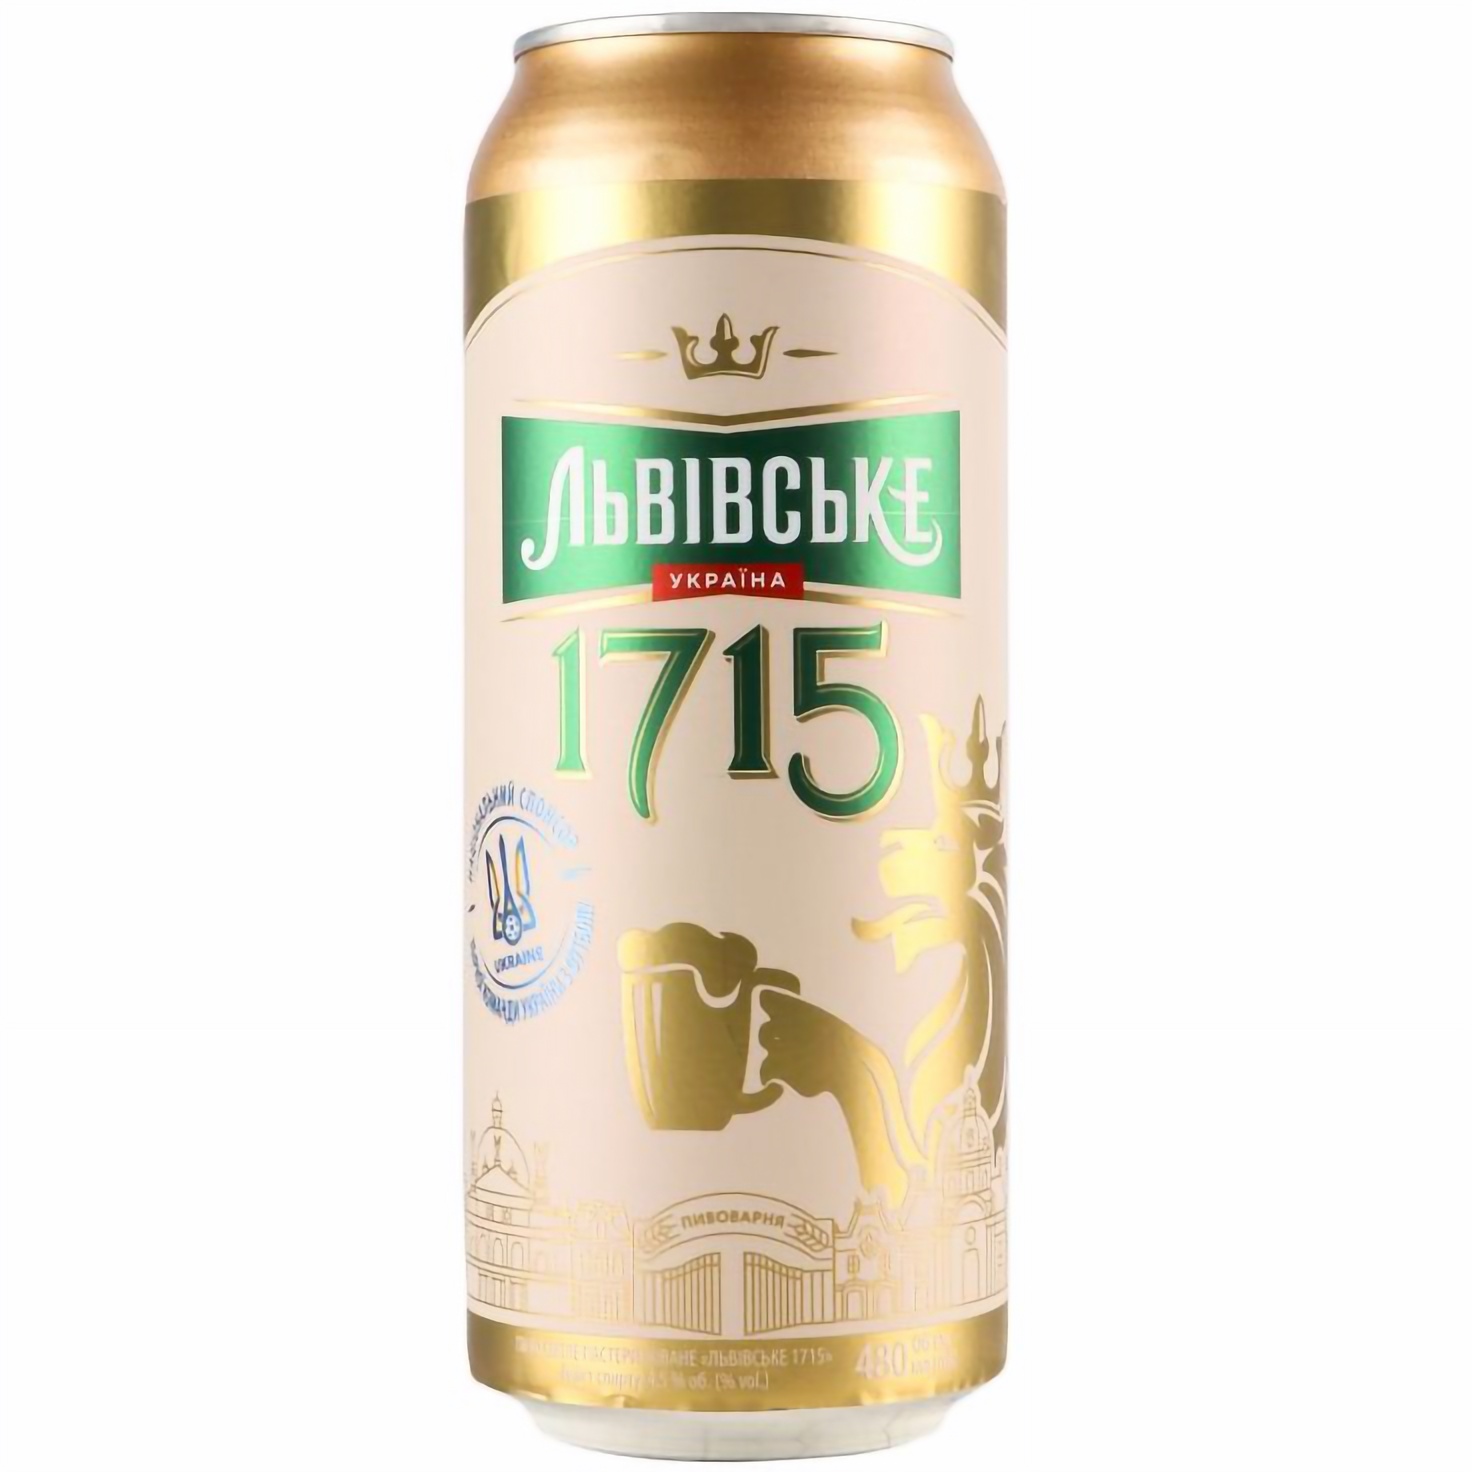 Пиво Львівське 1715, светлое, 4,5%, ж/б, 0,48 л (320363) - фото 1